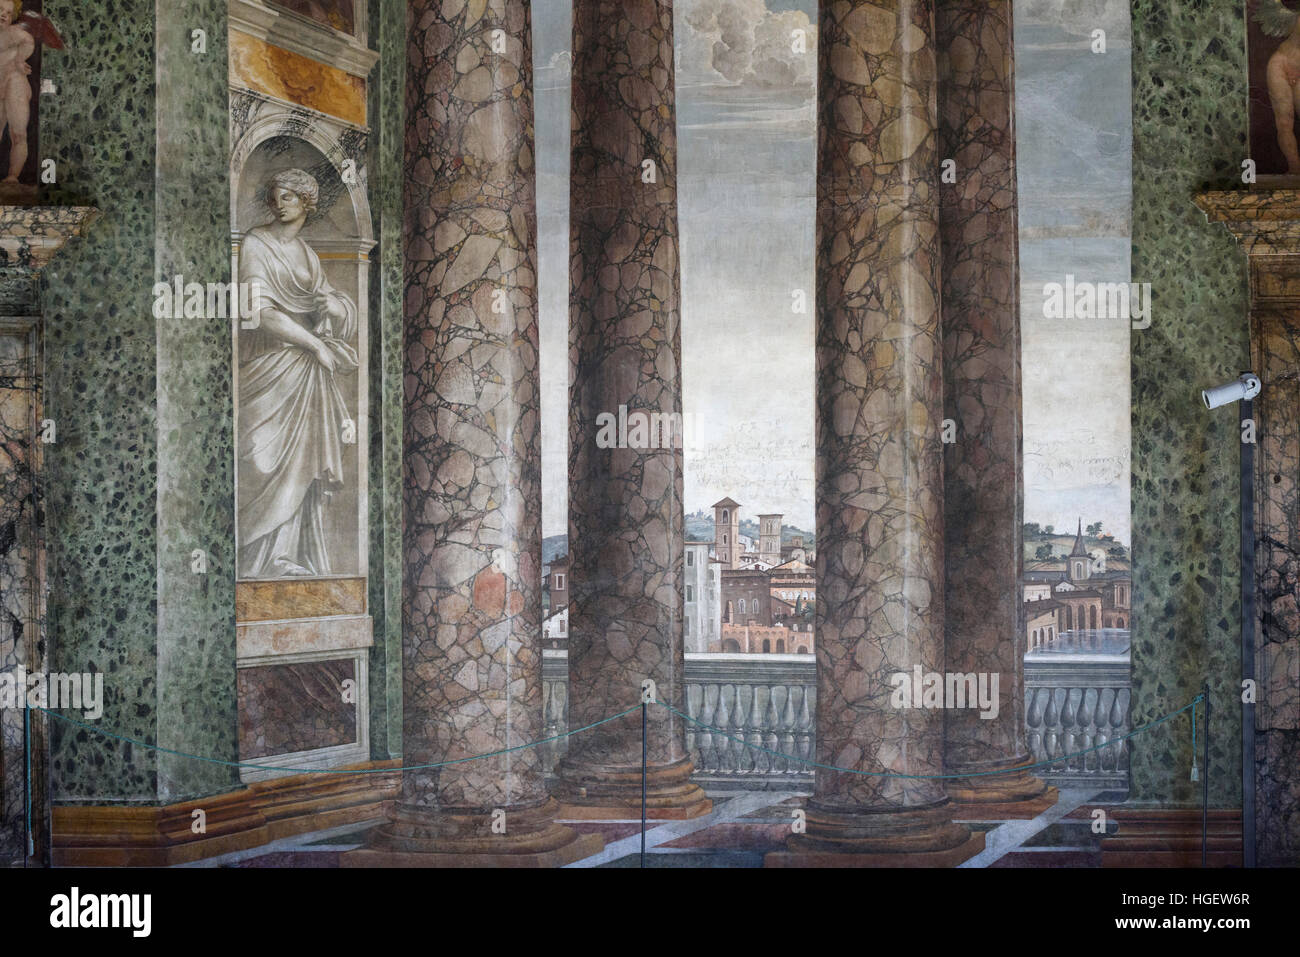 Roma. Italia. Villa Farnesina. La Sala delle Prospettive (Hall de perspectivas), frescos por Baldassare Peruzzi, 1519. Foto de stock